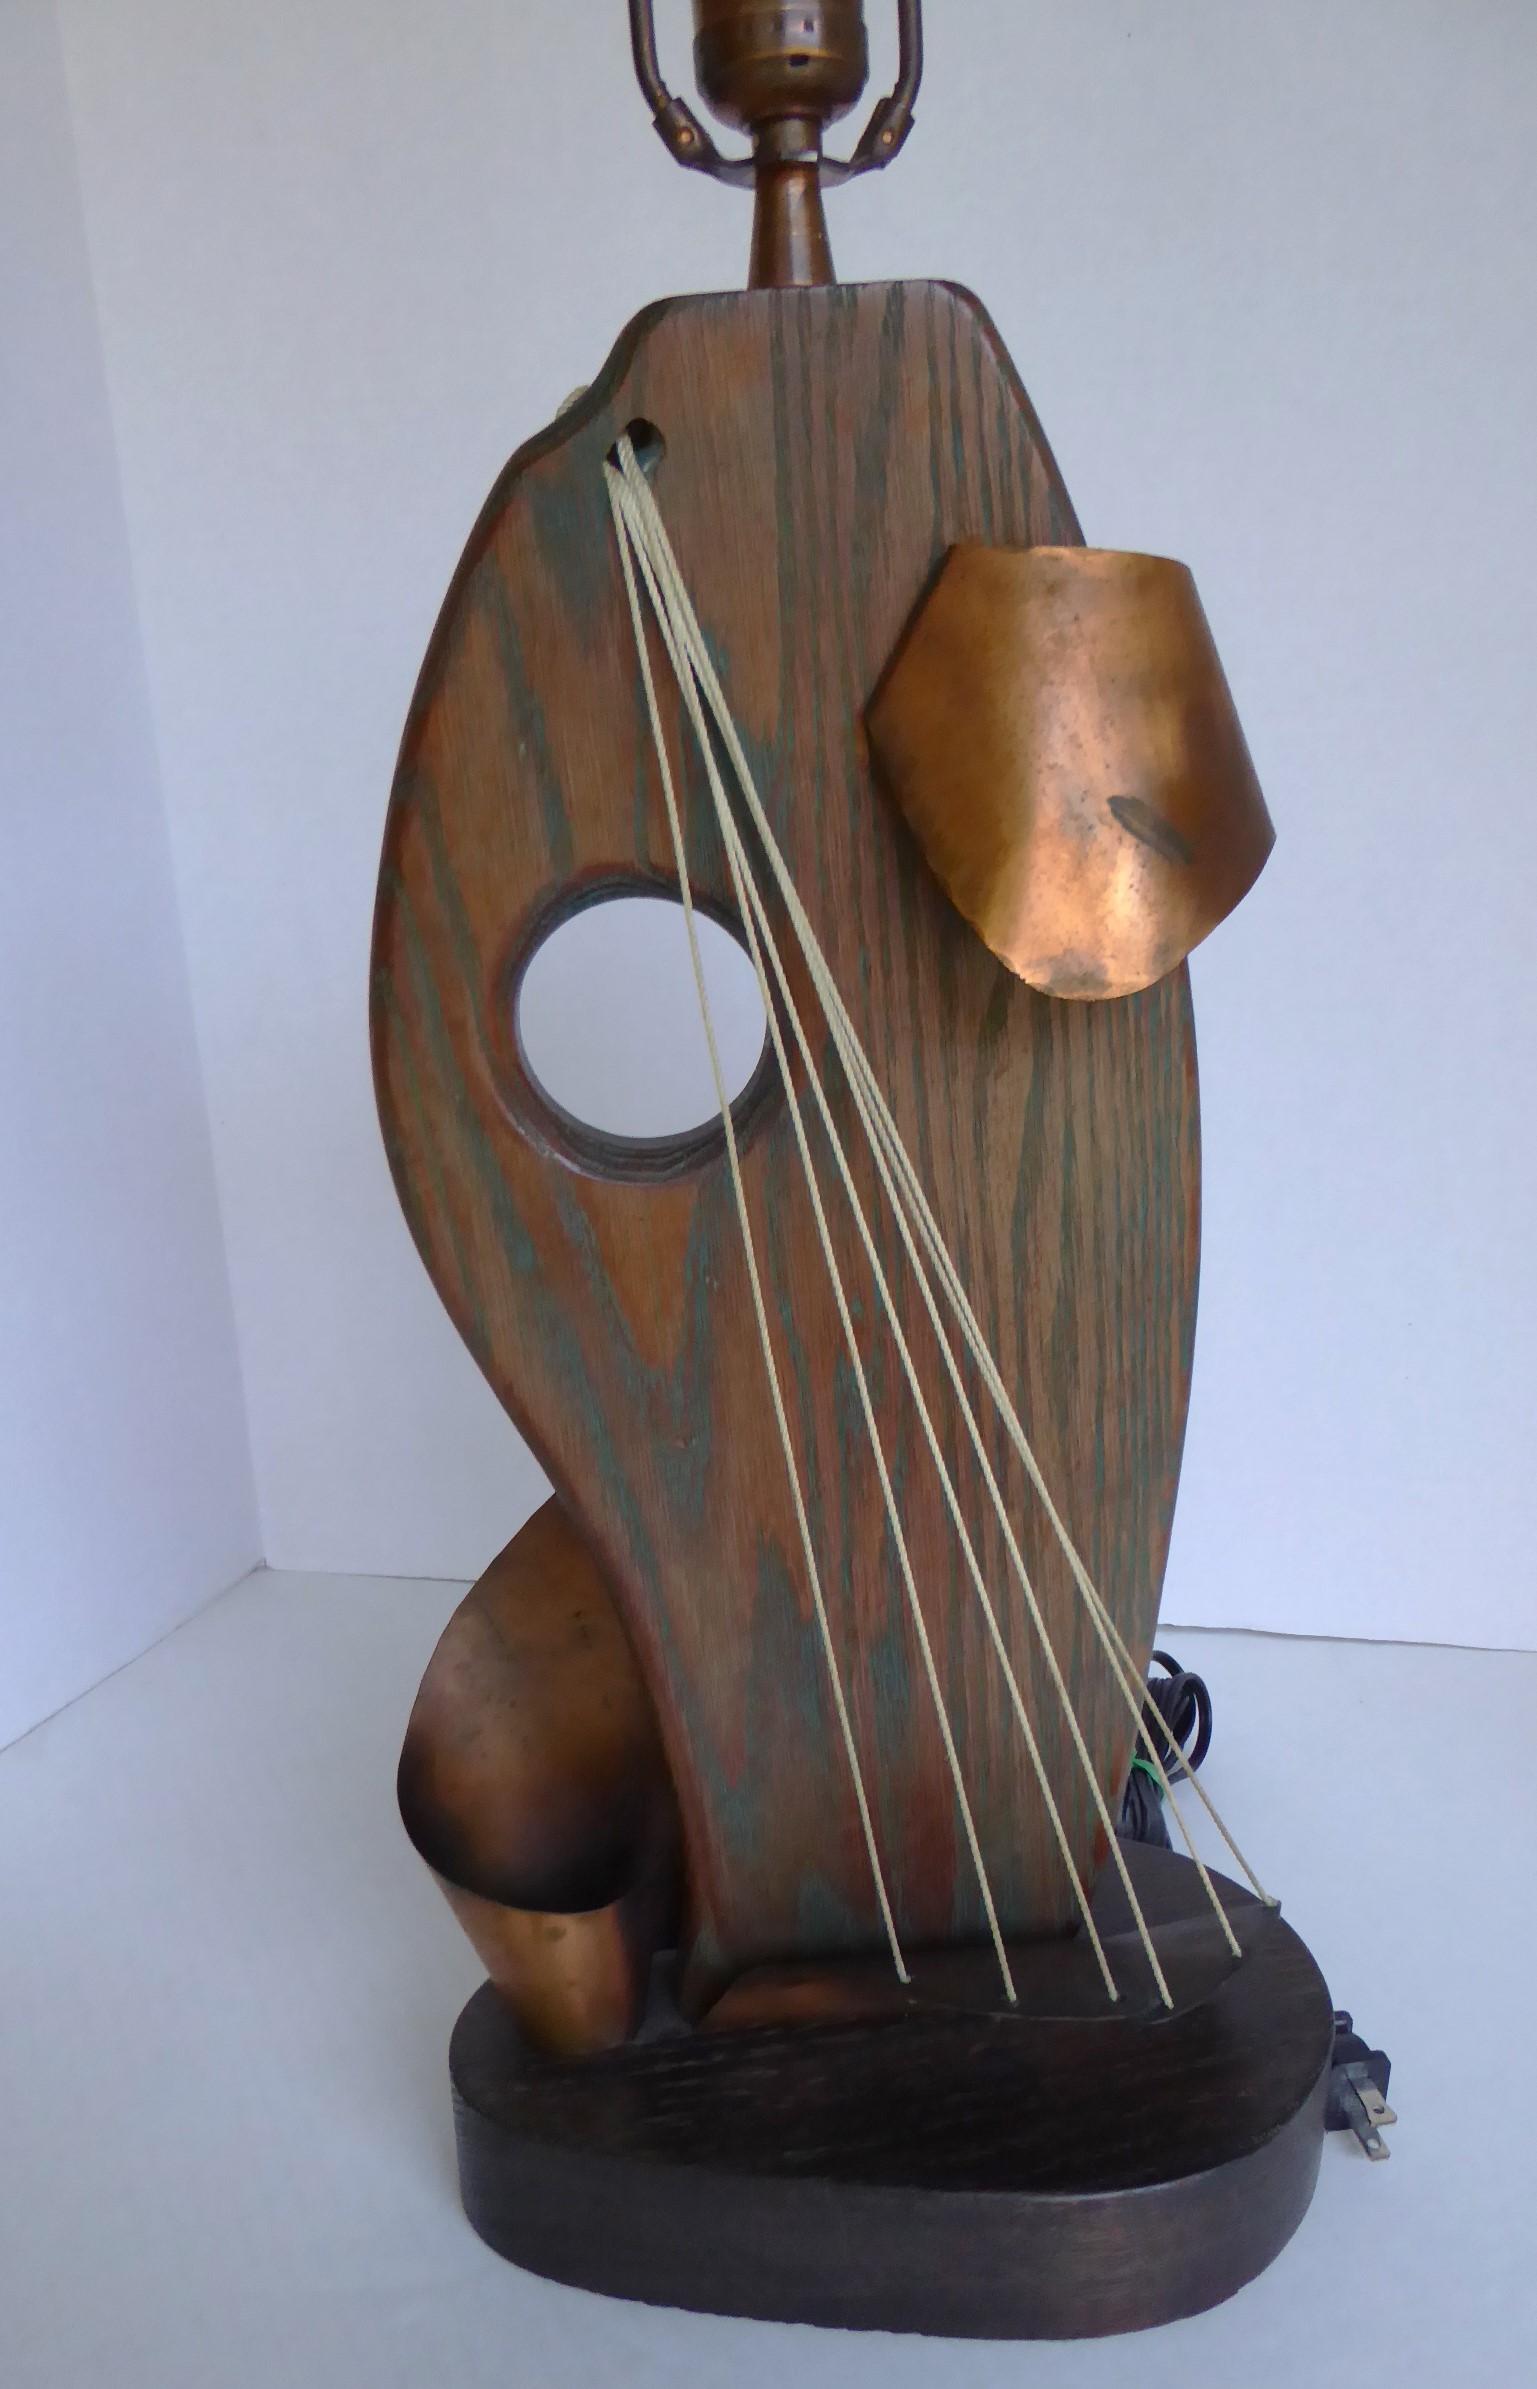 Mid Century Modern markante Schöpfung Tischlampe von Yasha Heifetz in den 1950er Jahren entworfen.  Bestehend aus einem Korpus aus kerosiertem Eichenholz mit einem wirbelnden Kupferband, das sich um das Holz und die  String-Akzent, der ein Segel